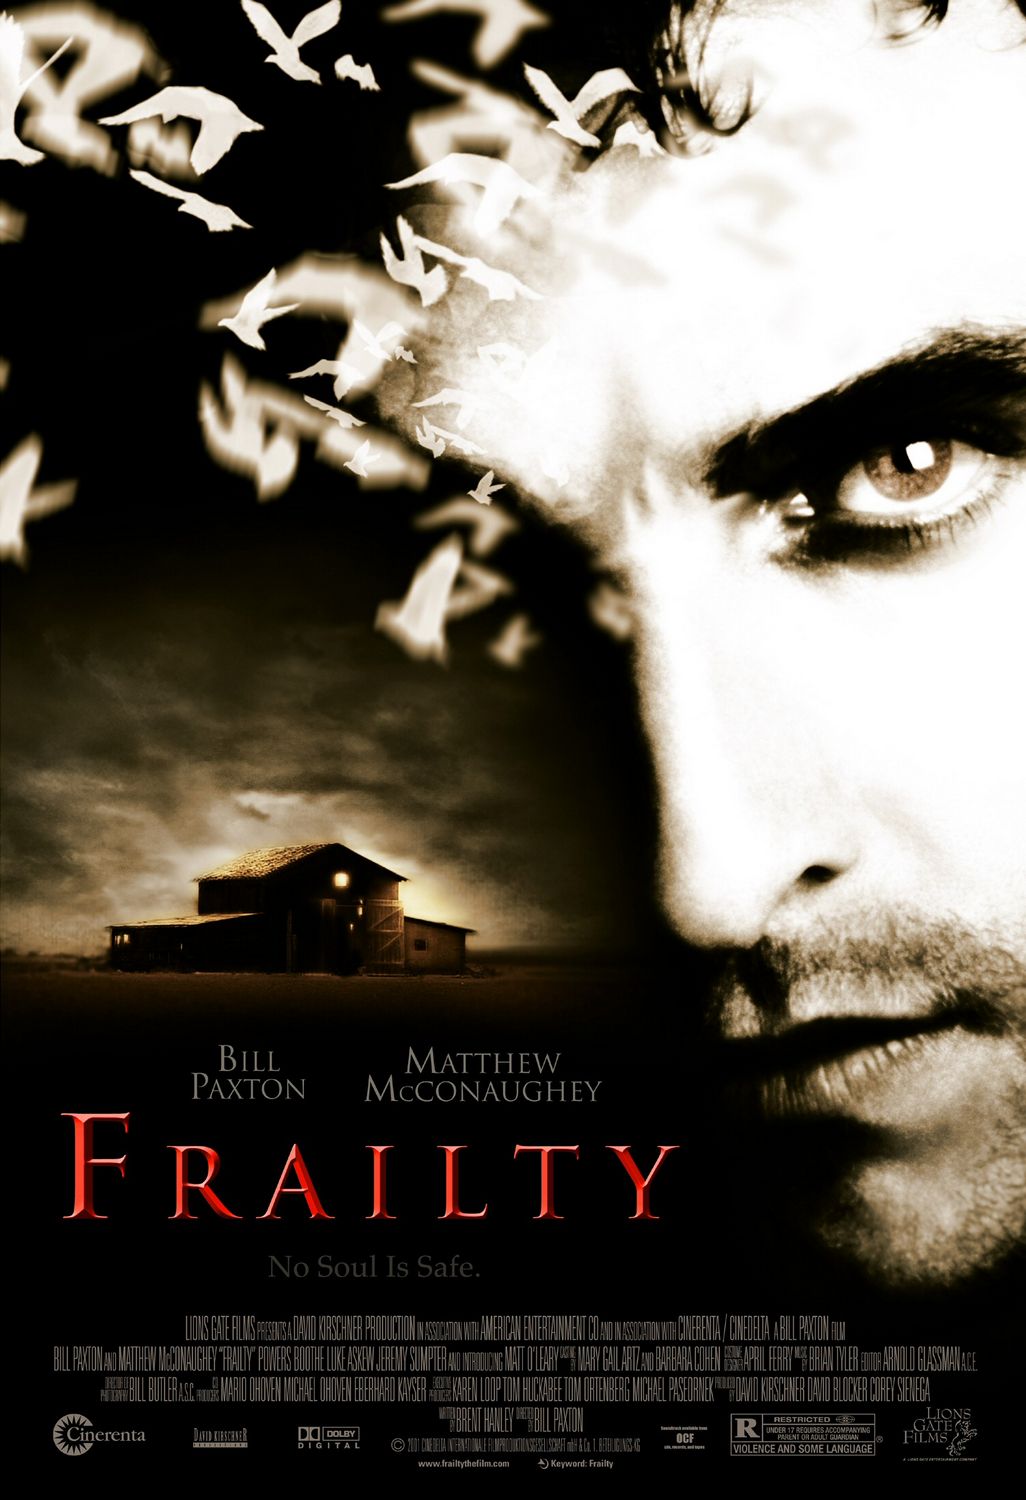 1636 - Frailty (2001)